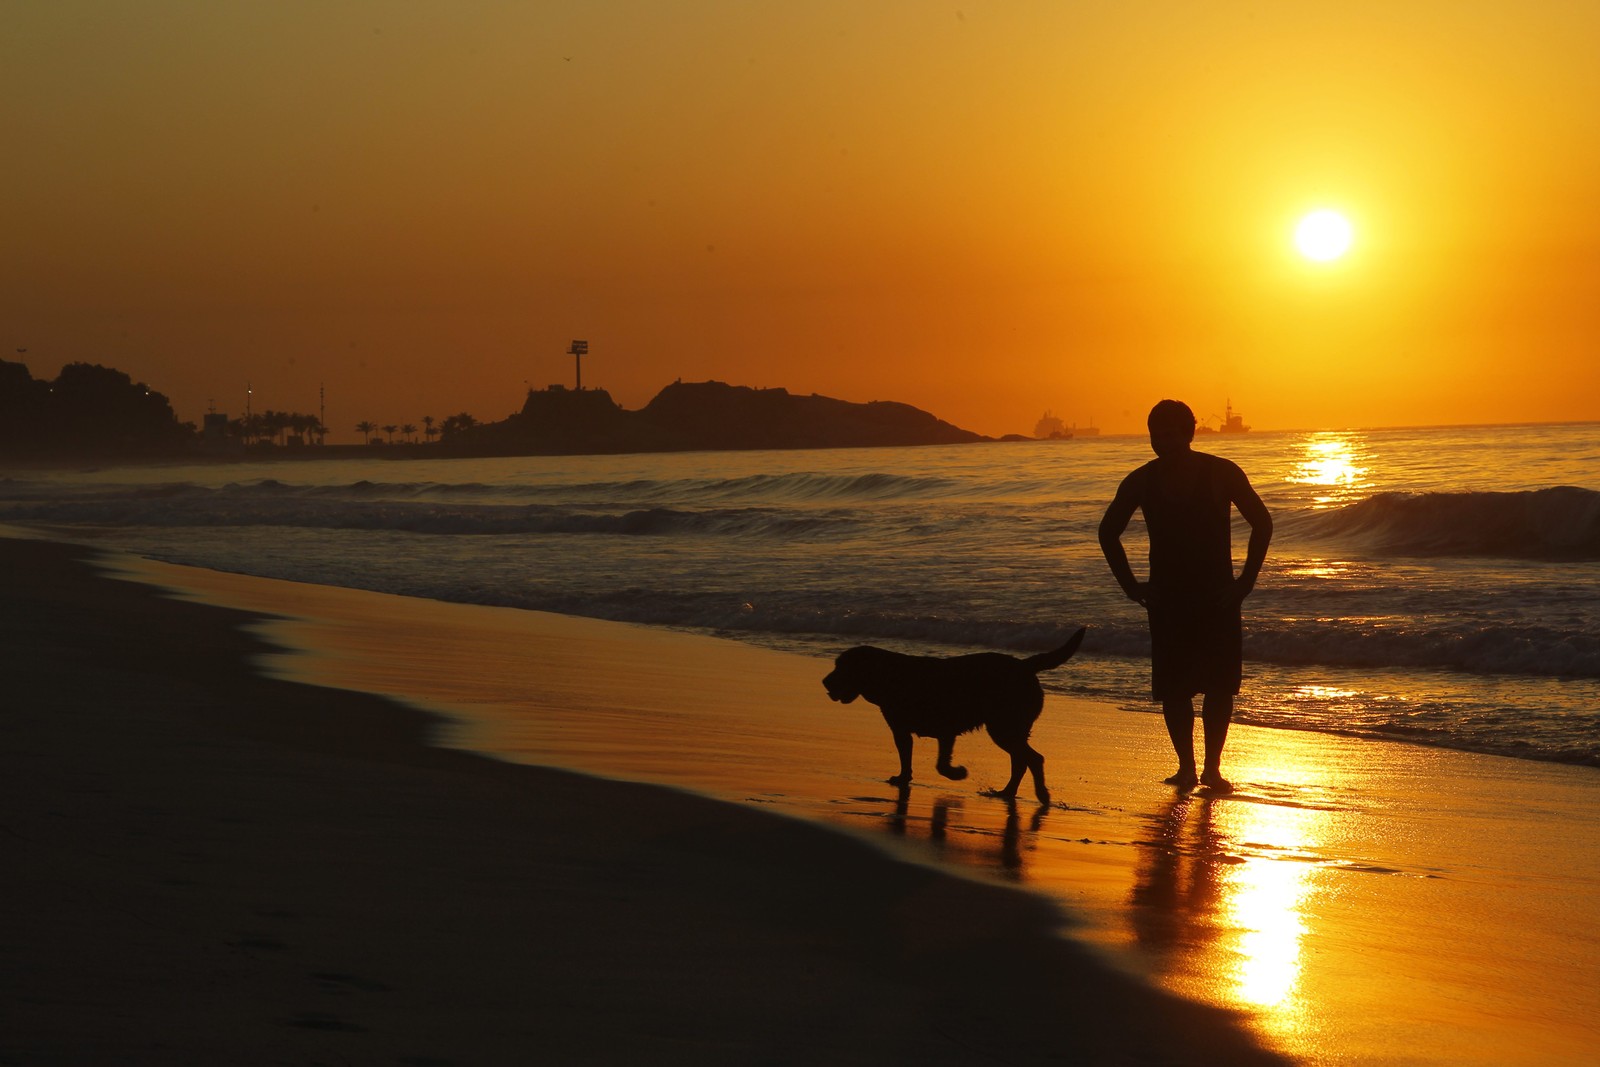 Um passeio na praia com o melhor amigo — Foto: Custodio Coimbra/Agência O Globo